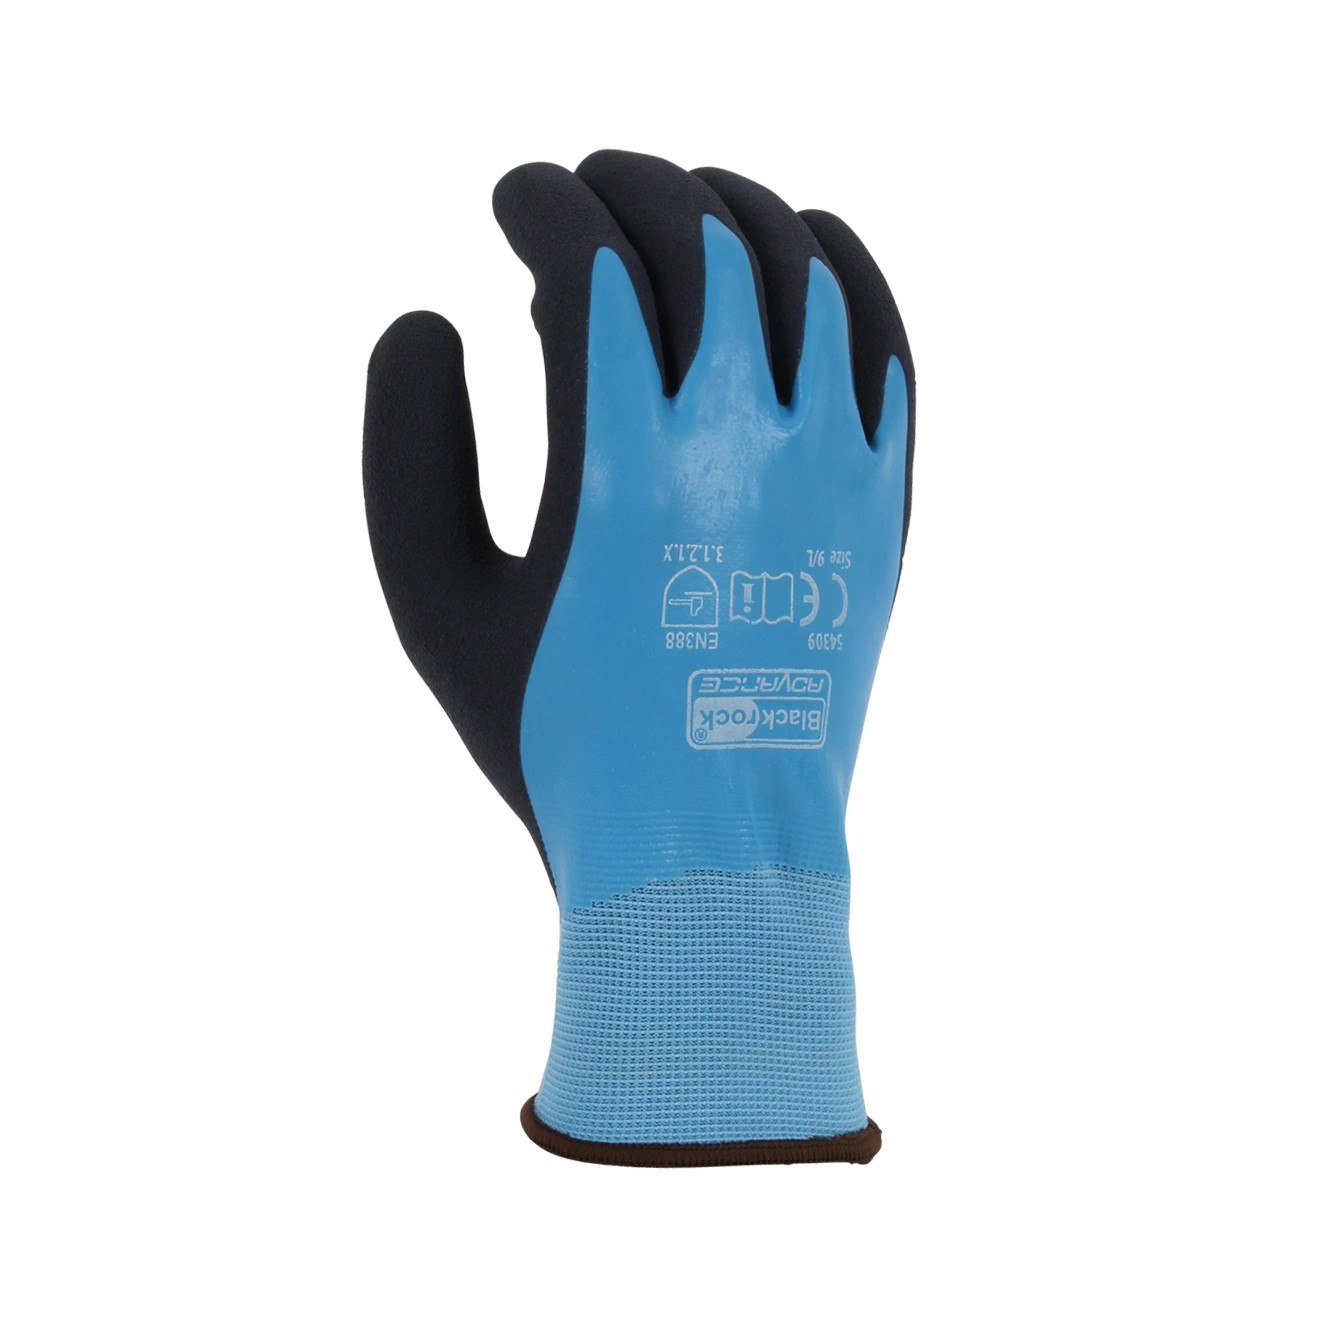 Watertite Work Glove